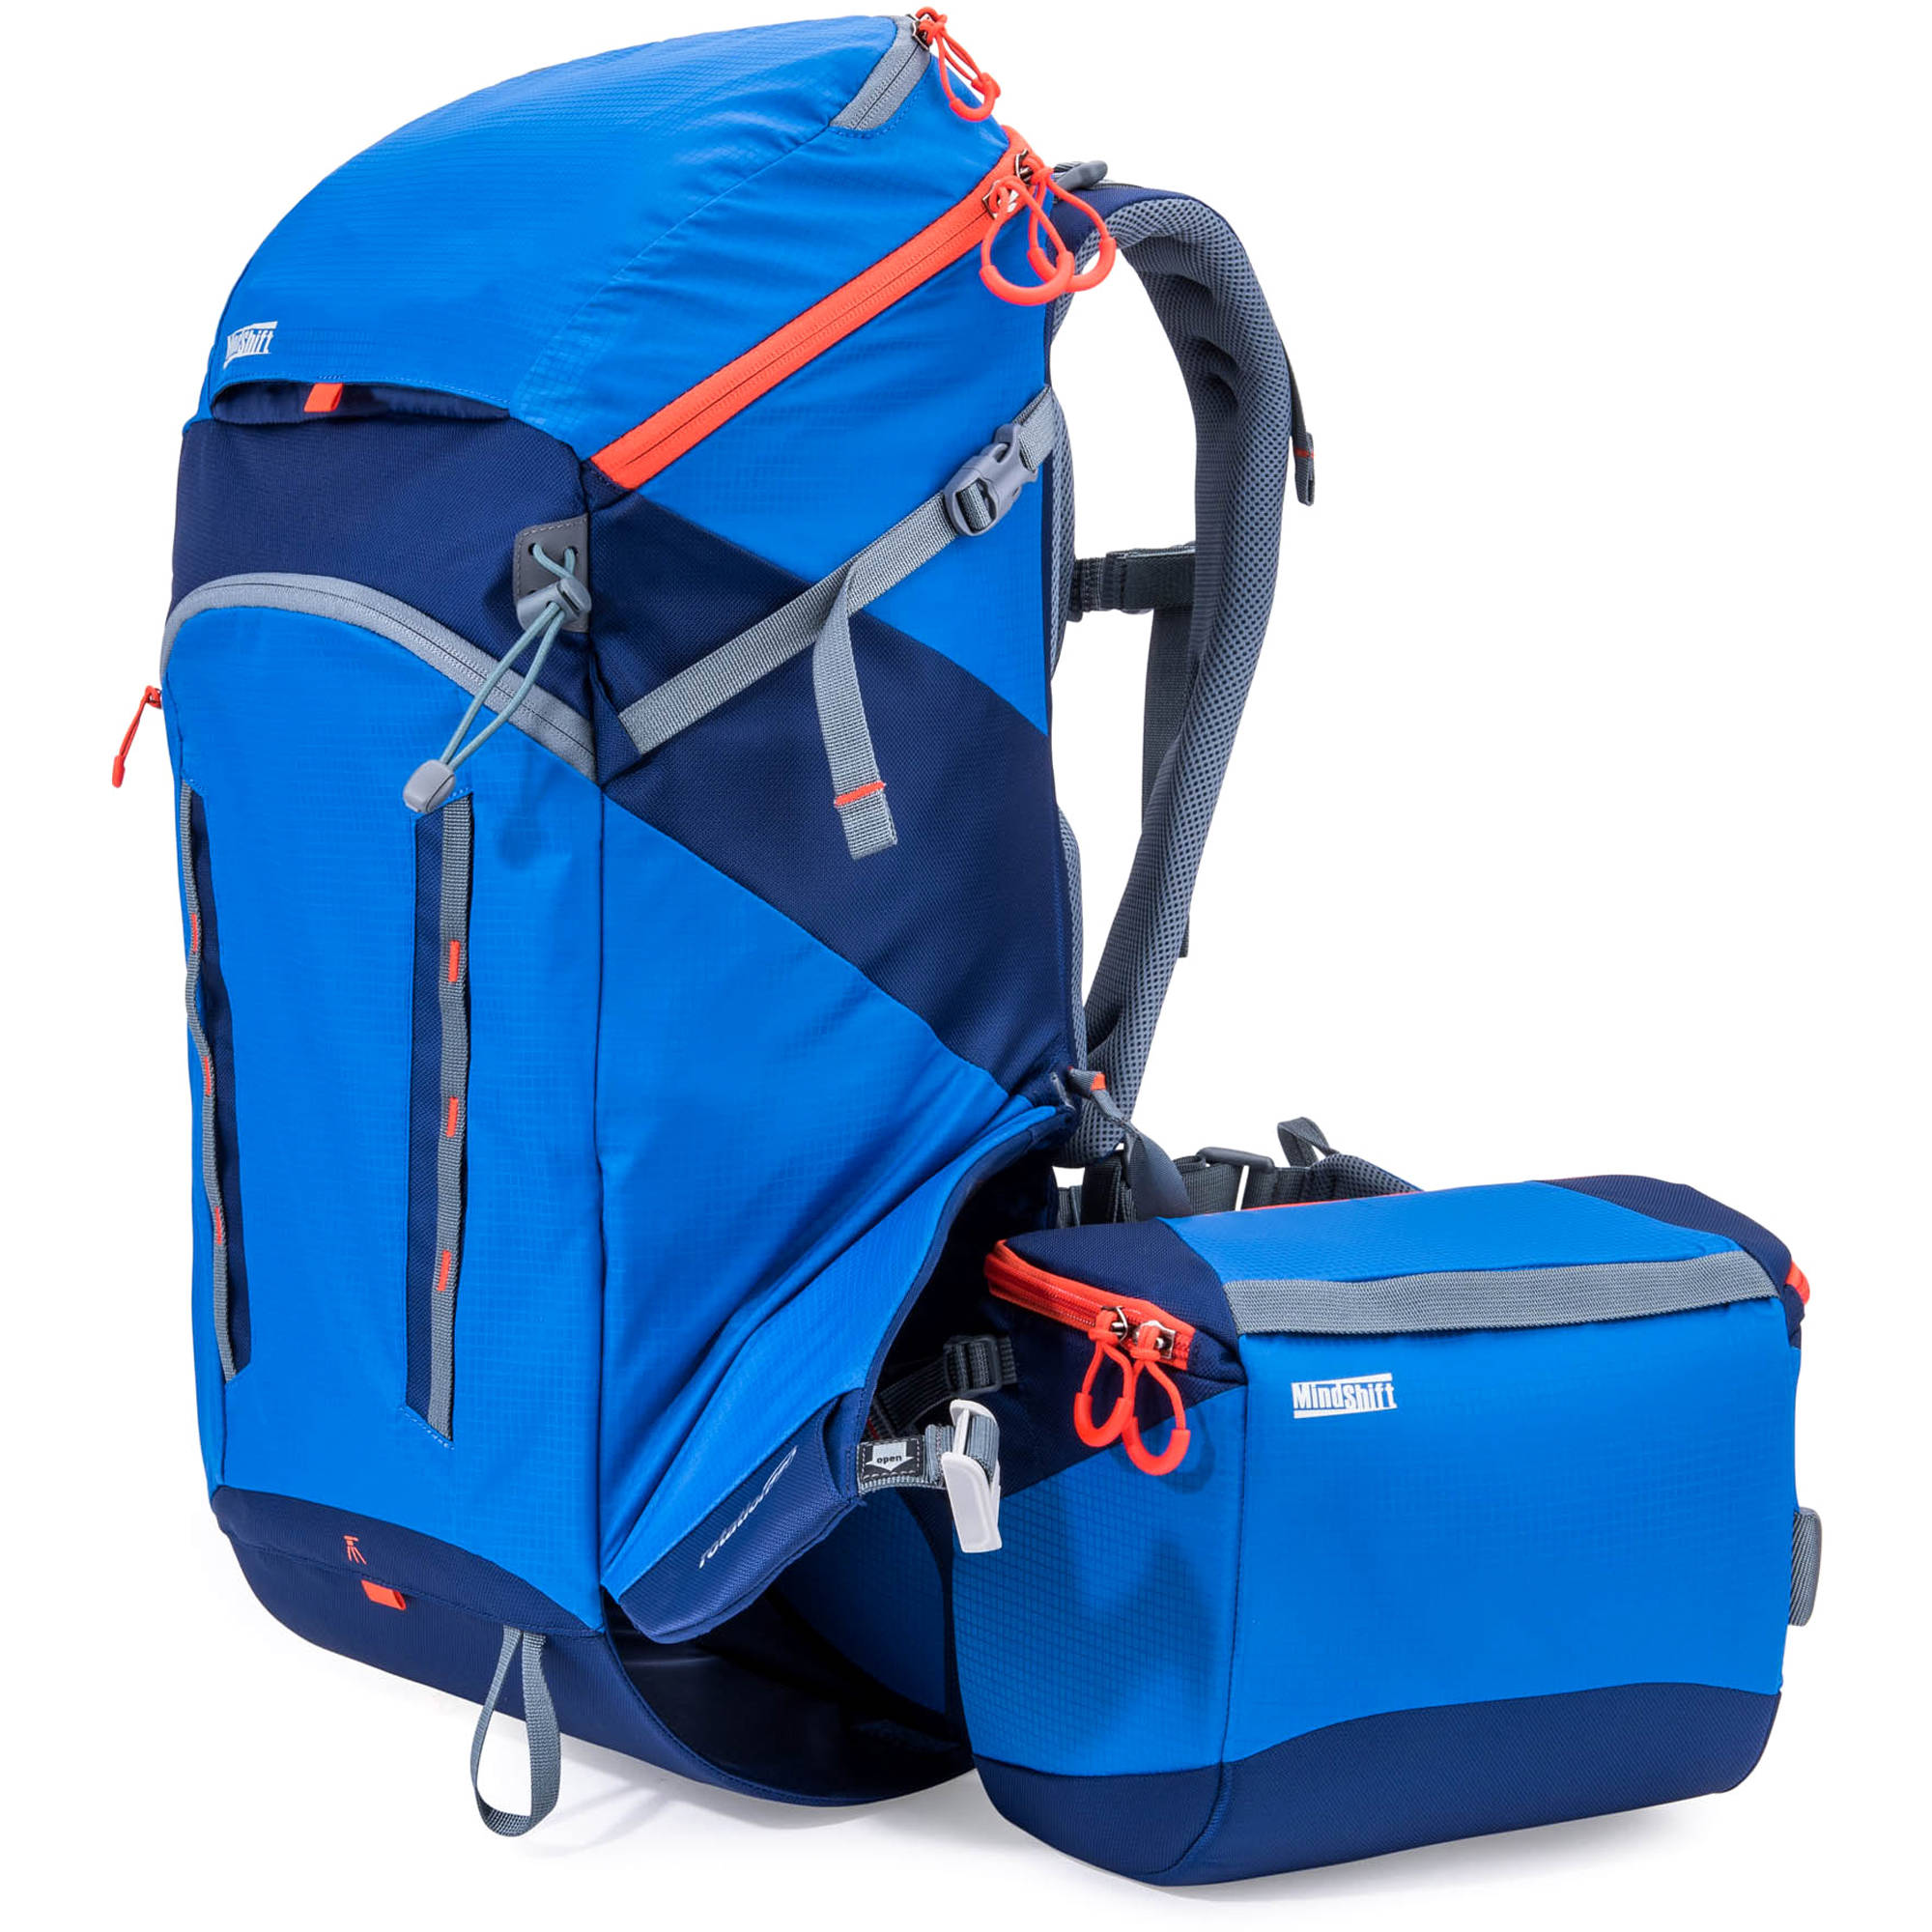 jordan backpack 2015